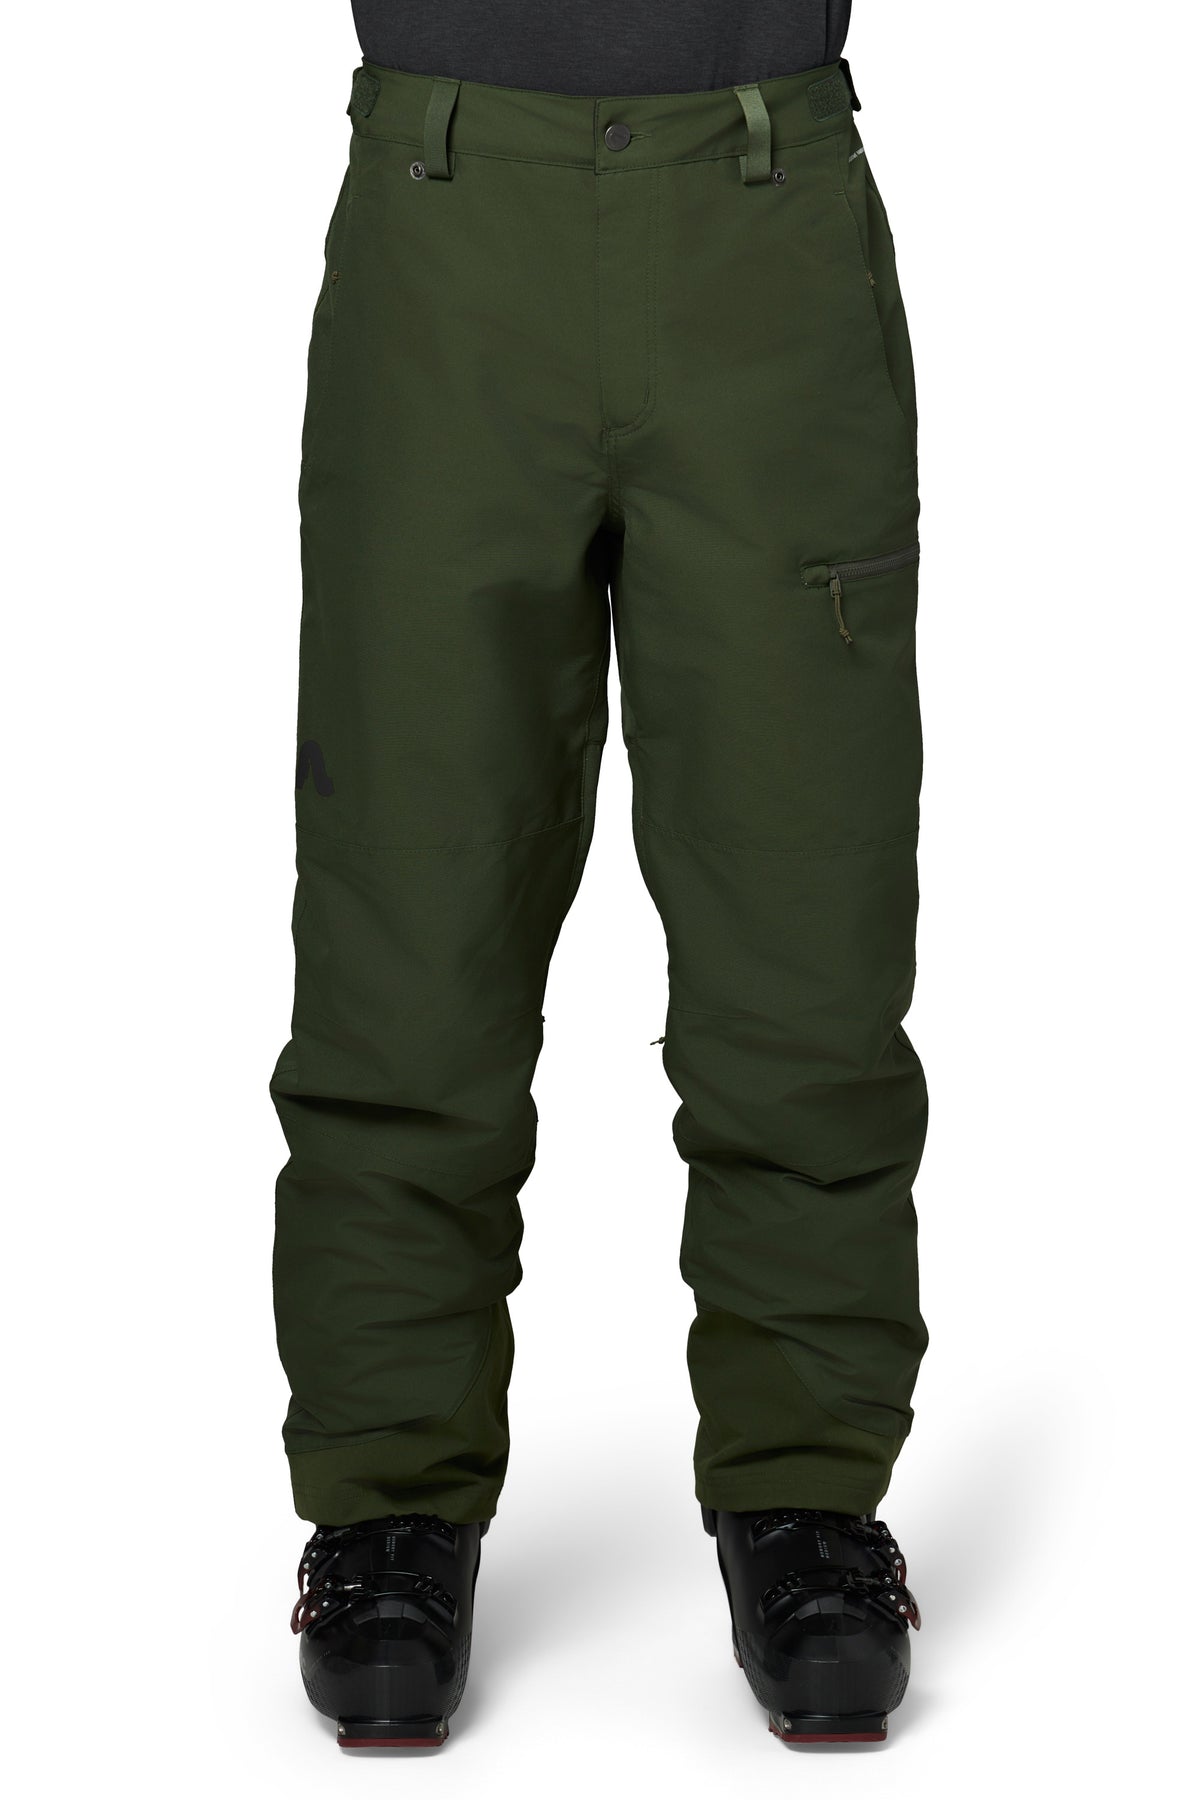 Patrol Pant   Men's Ski Pants   Flylow – Flylow Gear